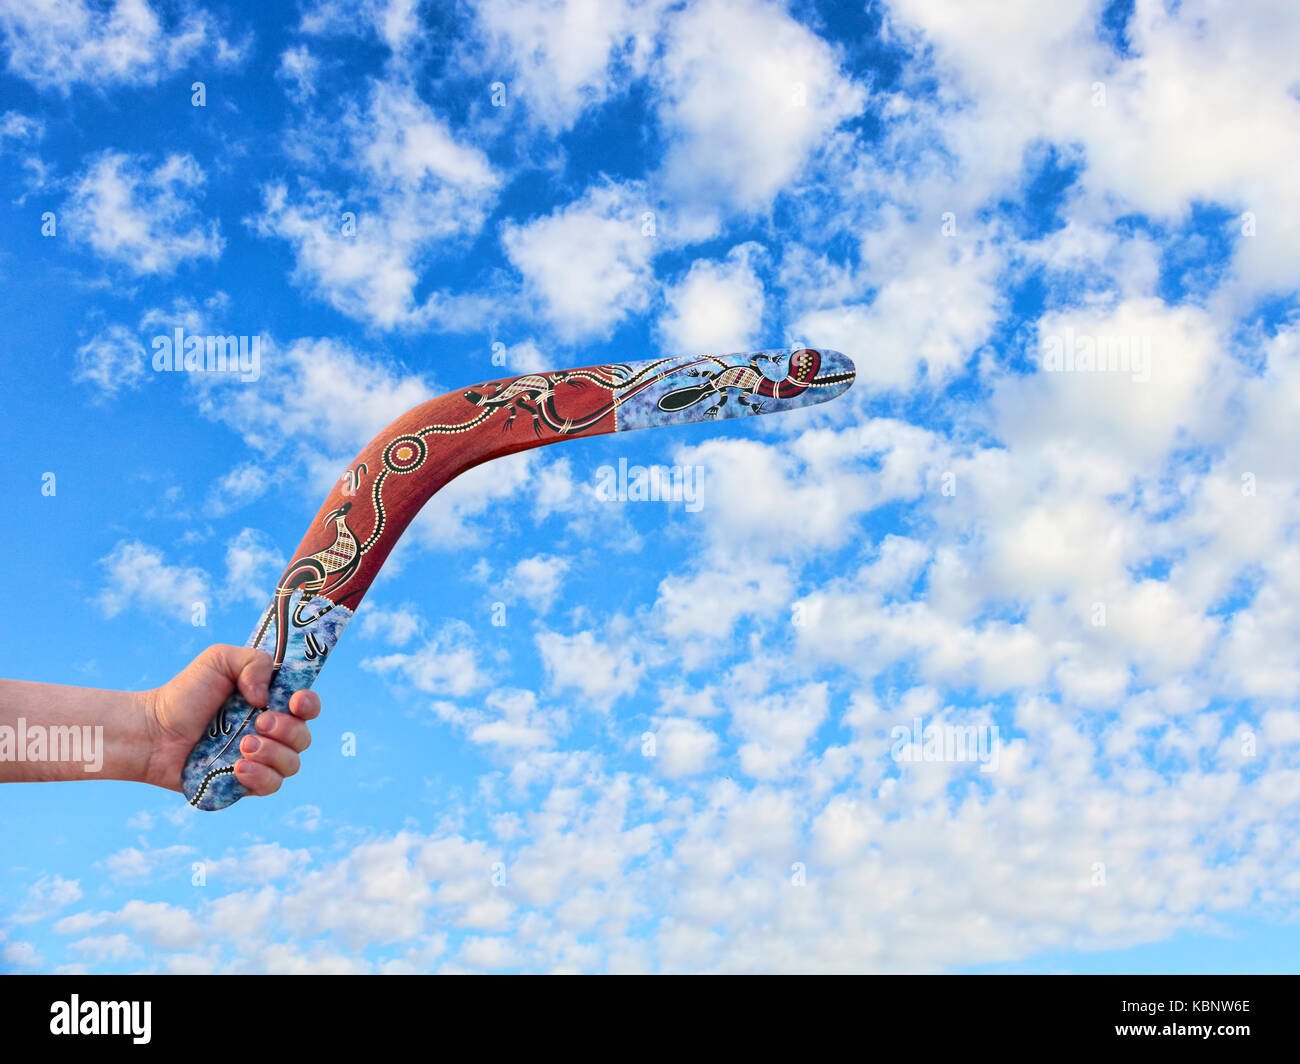 En boomerang australien couleur main libre contre les hommes pris de nuageux ciel bleu. Banque D'Images